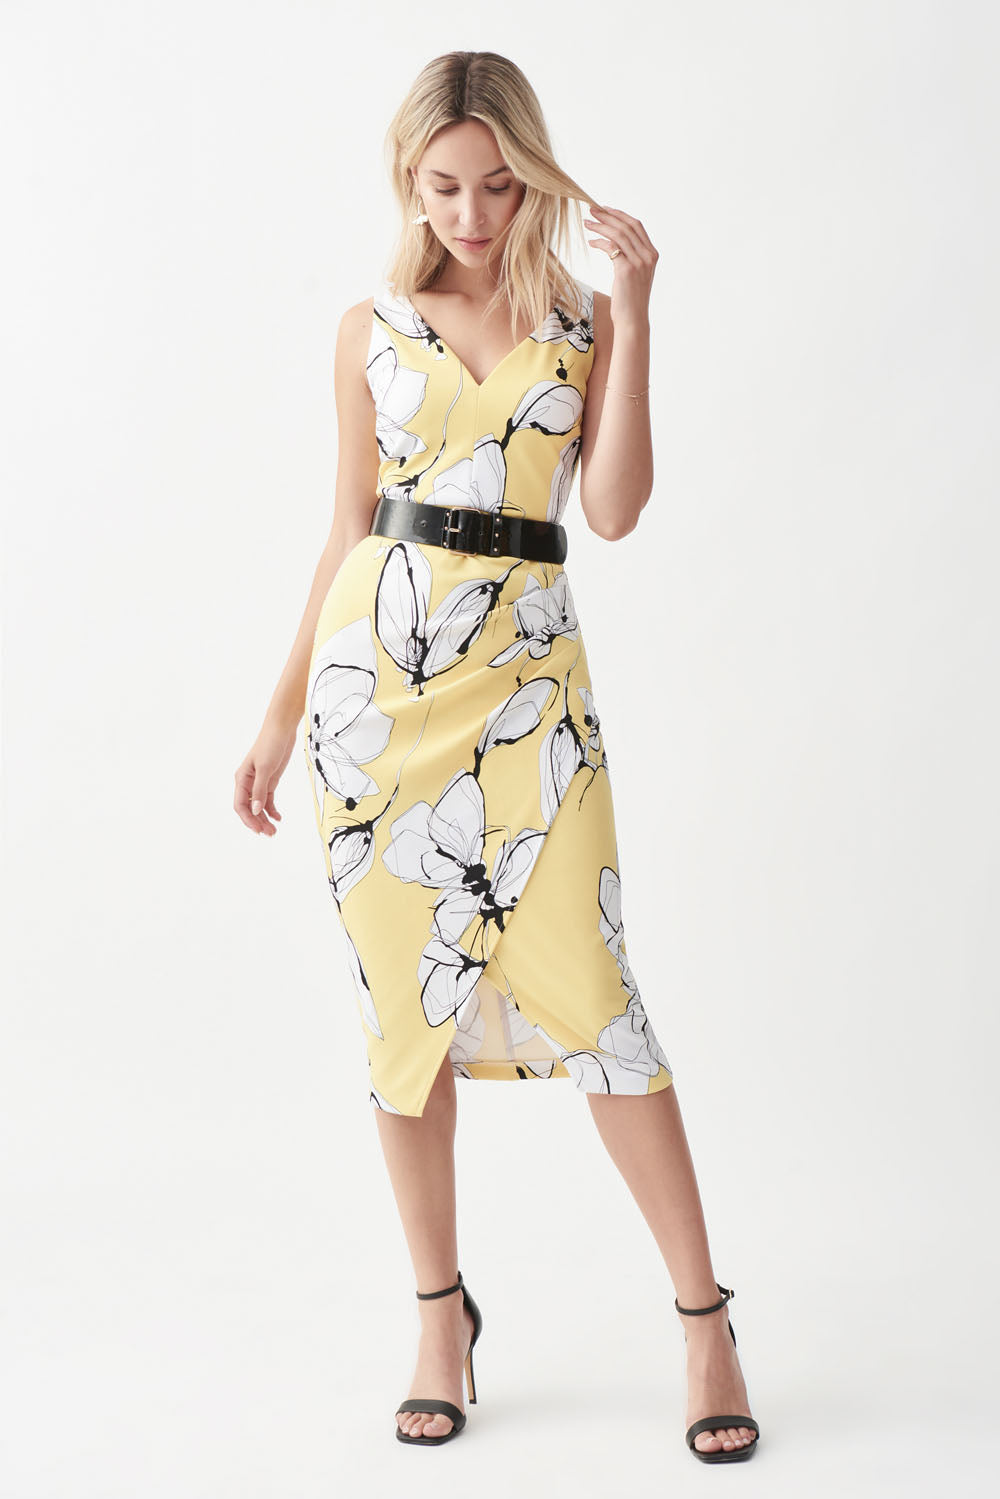 Joseph Ribkoff Limoncello-Multi Dress Style 221055